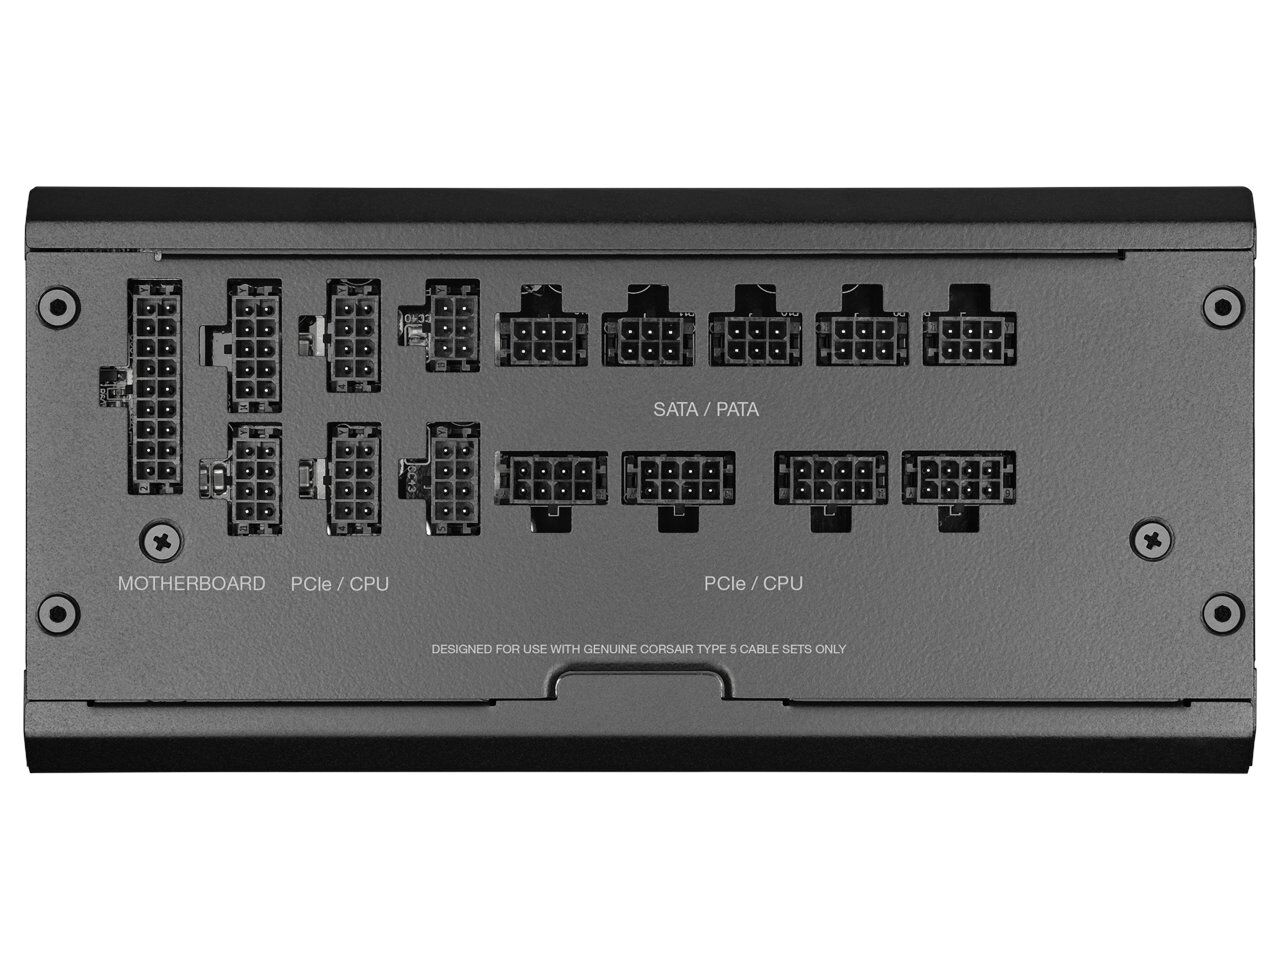 Corsair RMx Shift PSU Puts Its Connectors Sideways For Unique Case Layouts 24